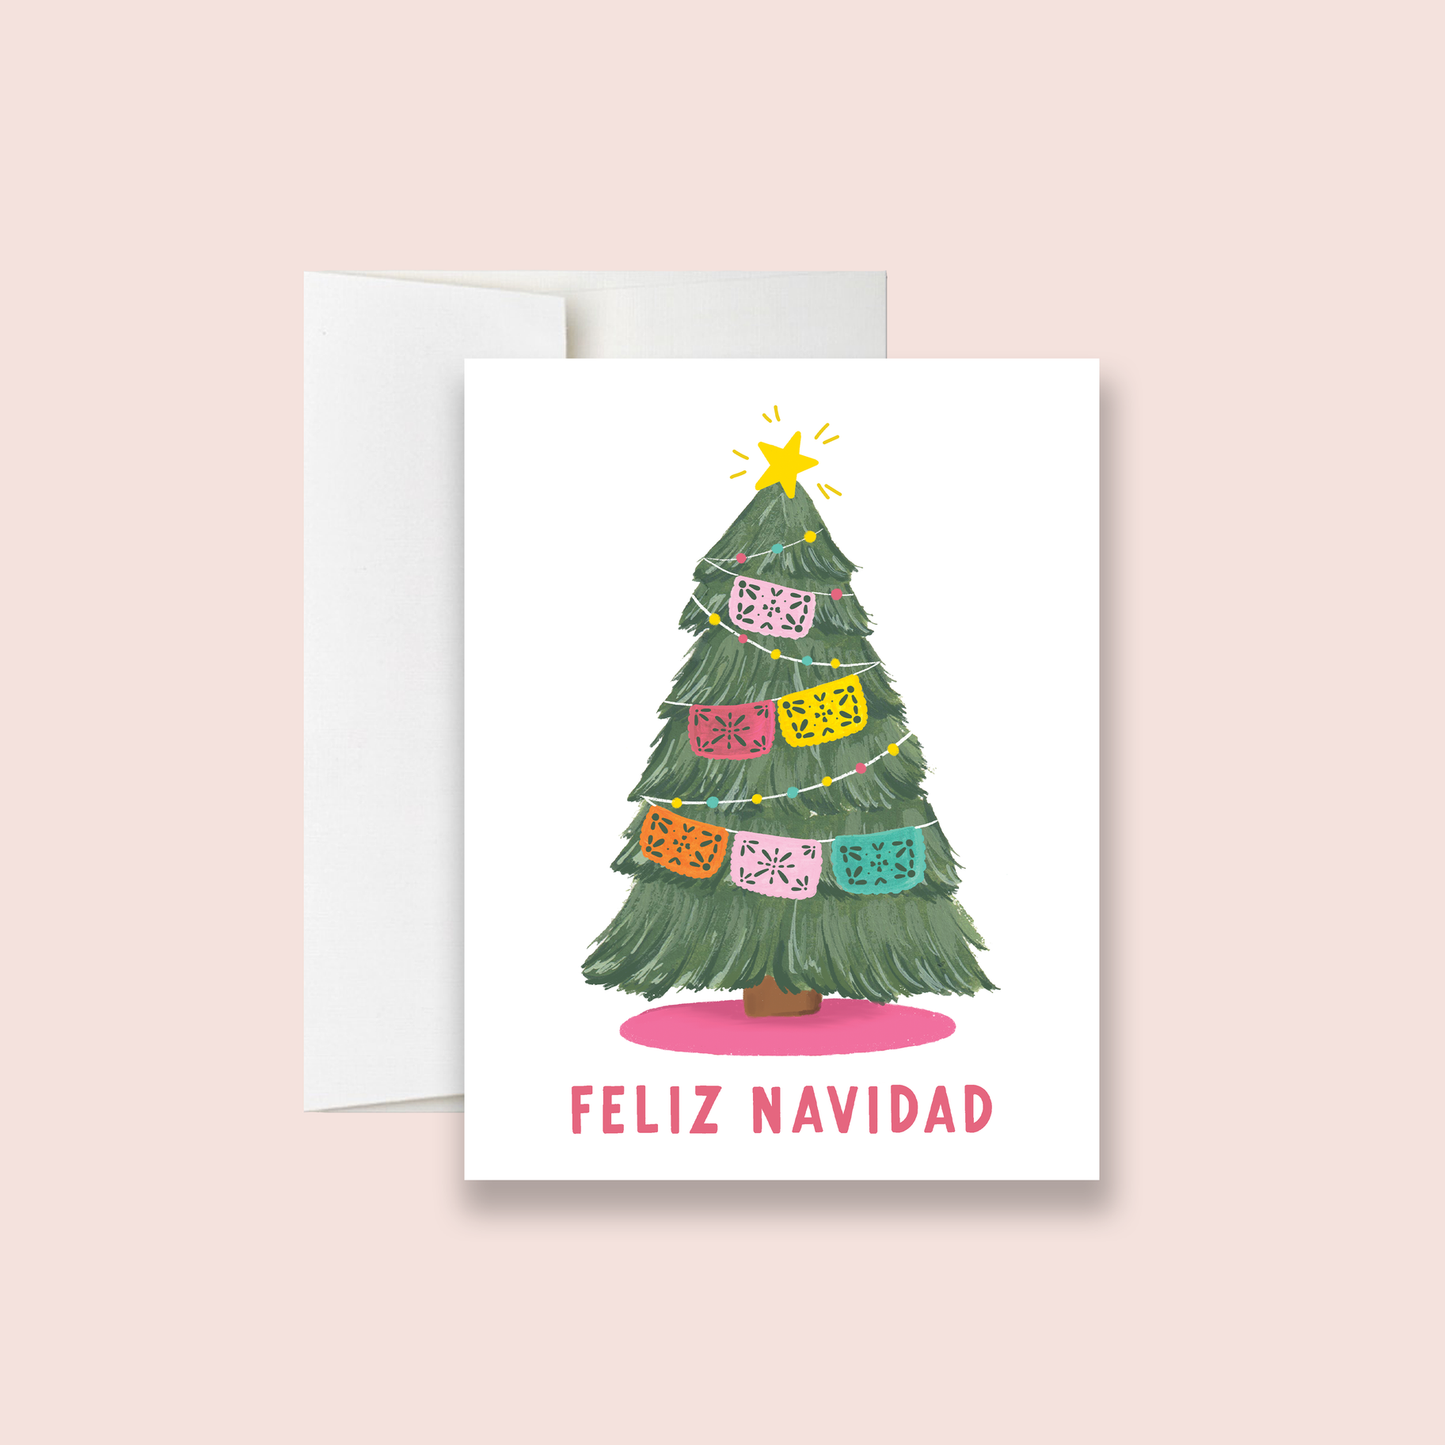 Papel Picado Navidad Greeting Card